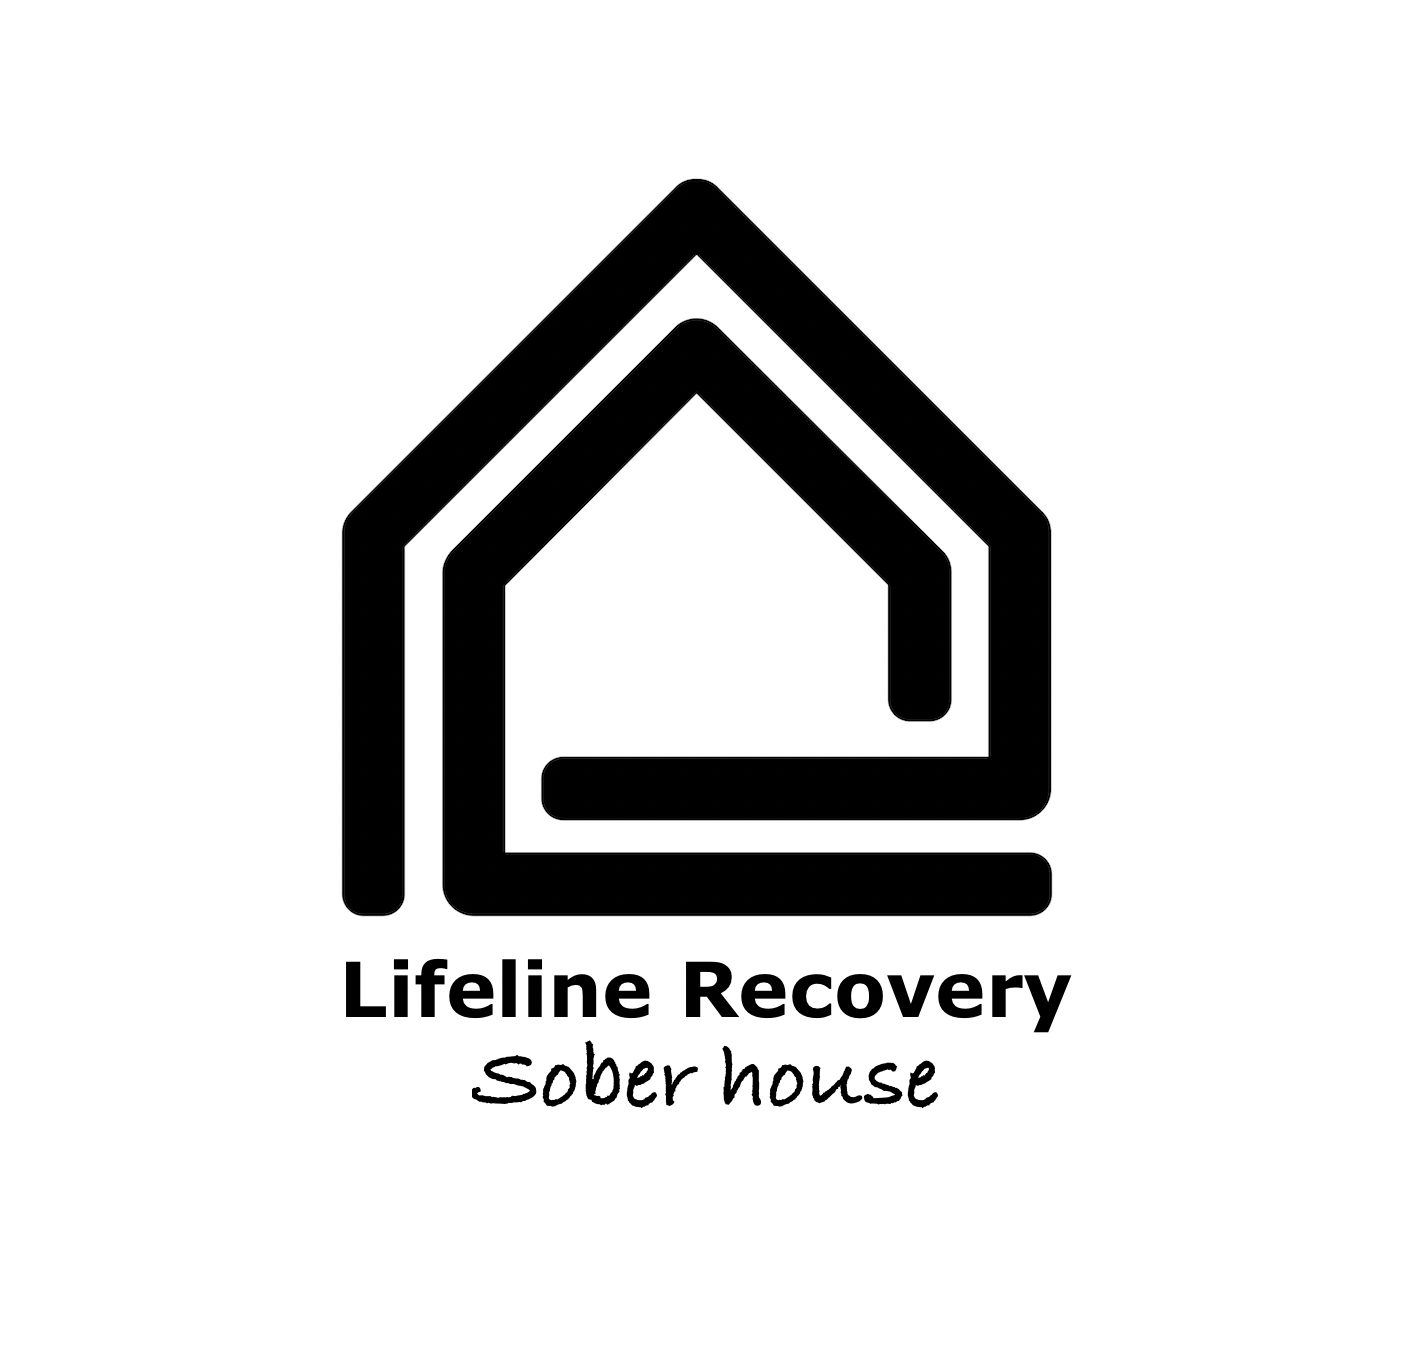 Lifeline Recovery